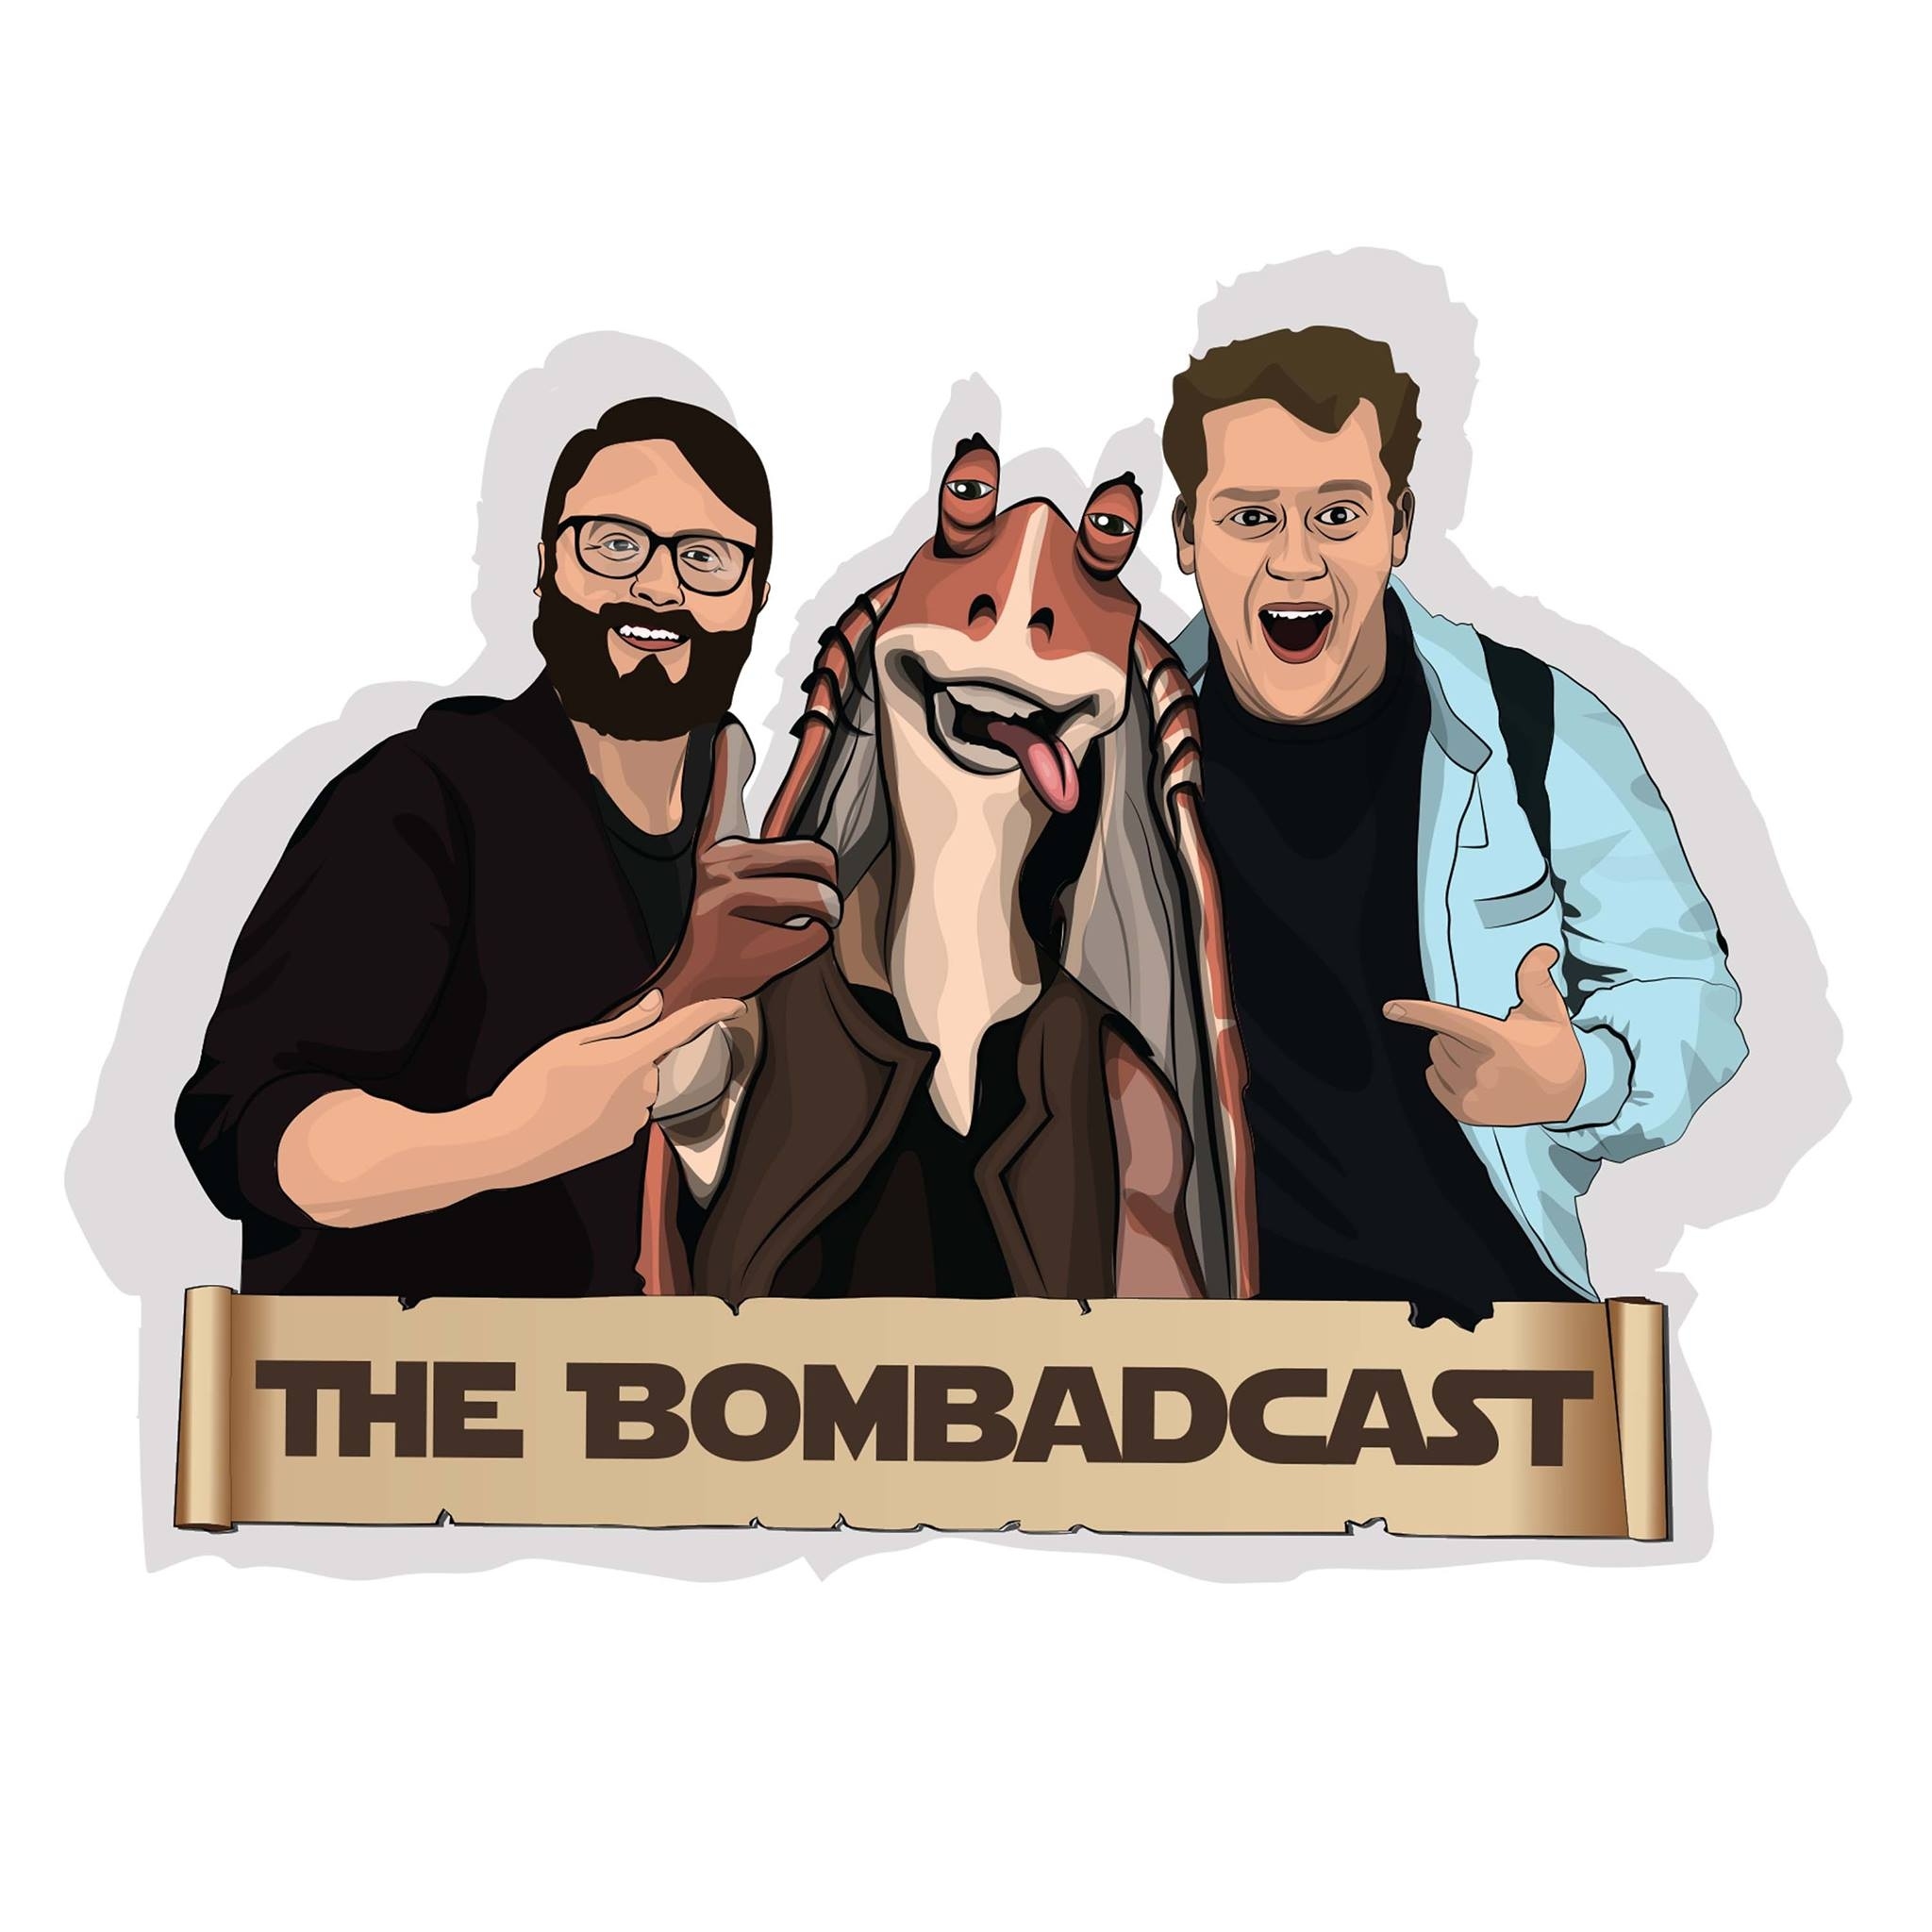 Scott Jayron anime le podcast The Bombadcast et est un fan fini de La Menace Fantôme!